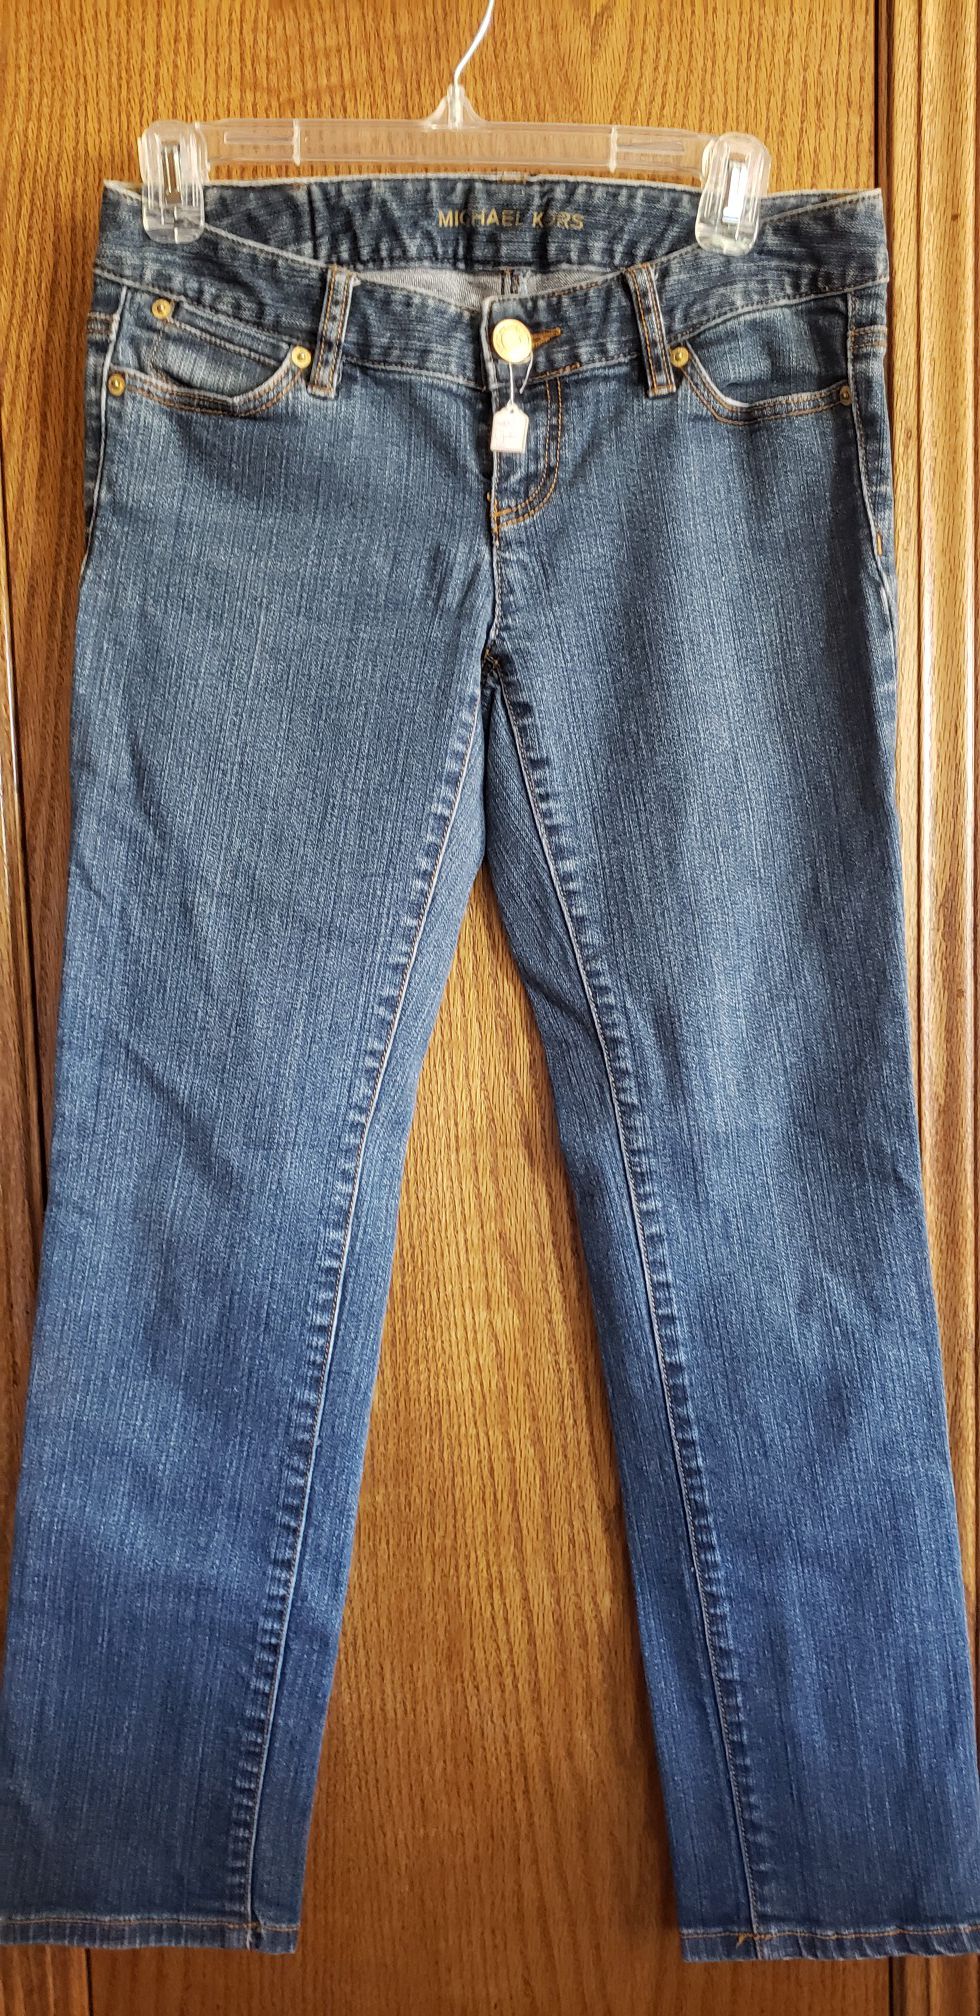 Michael Kors Jeans size 4